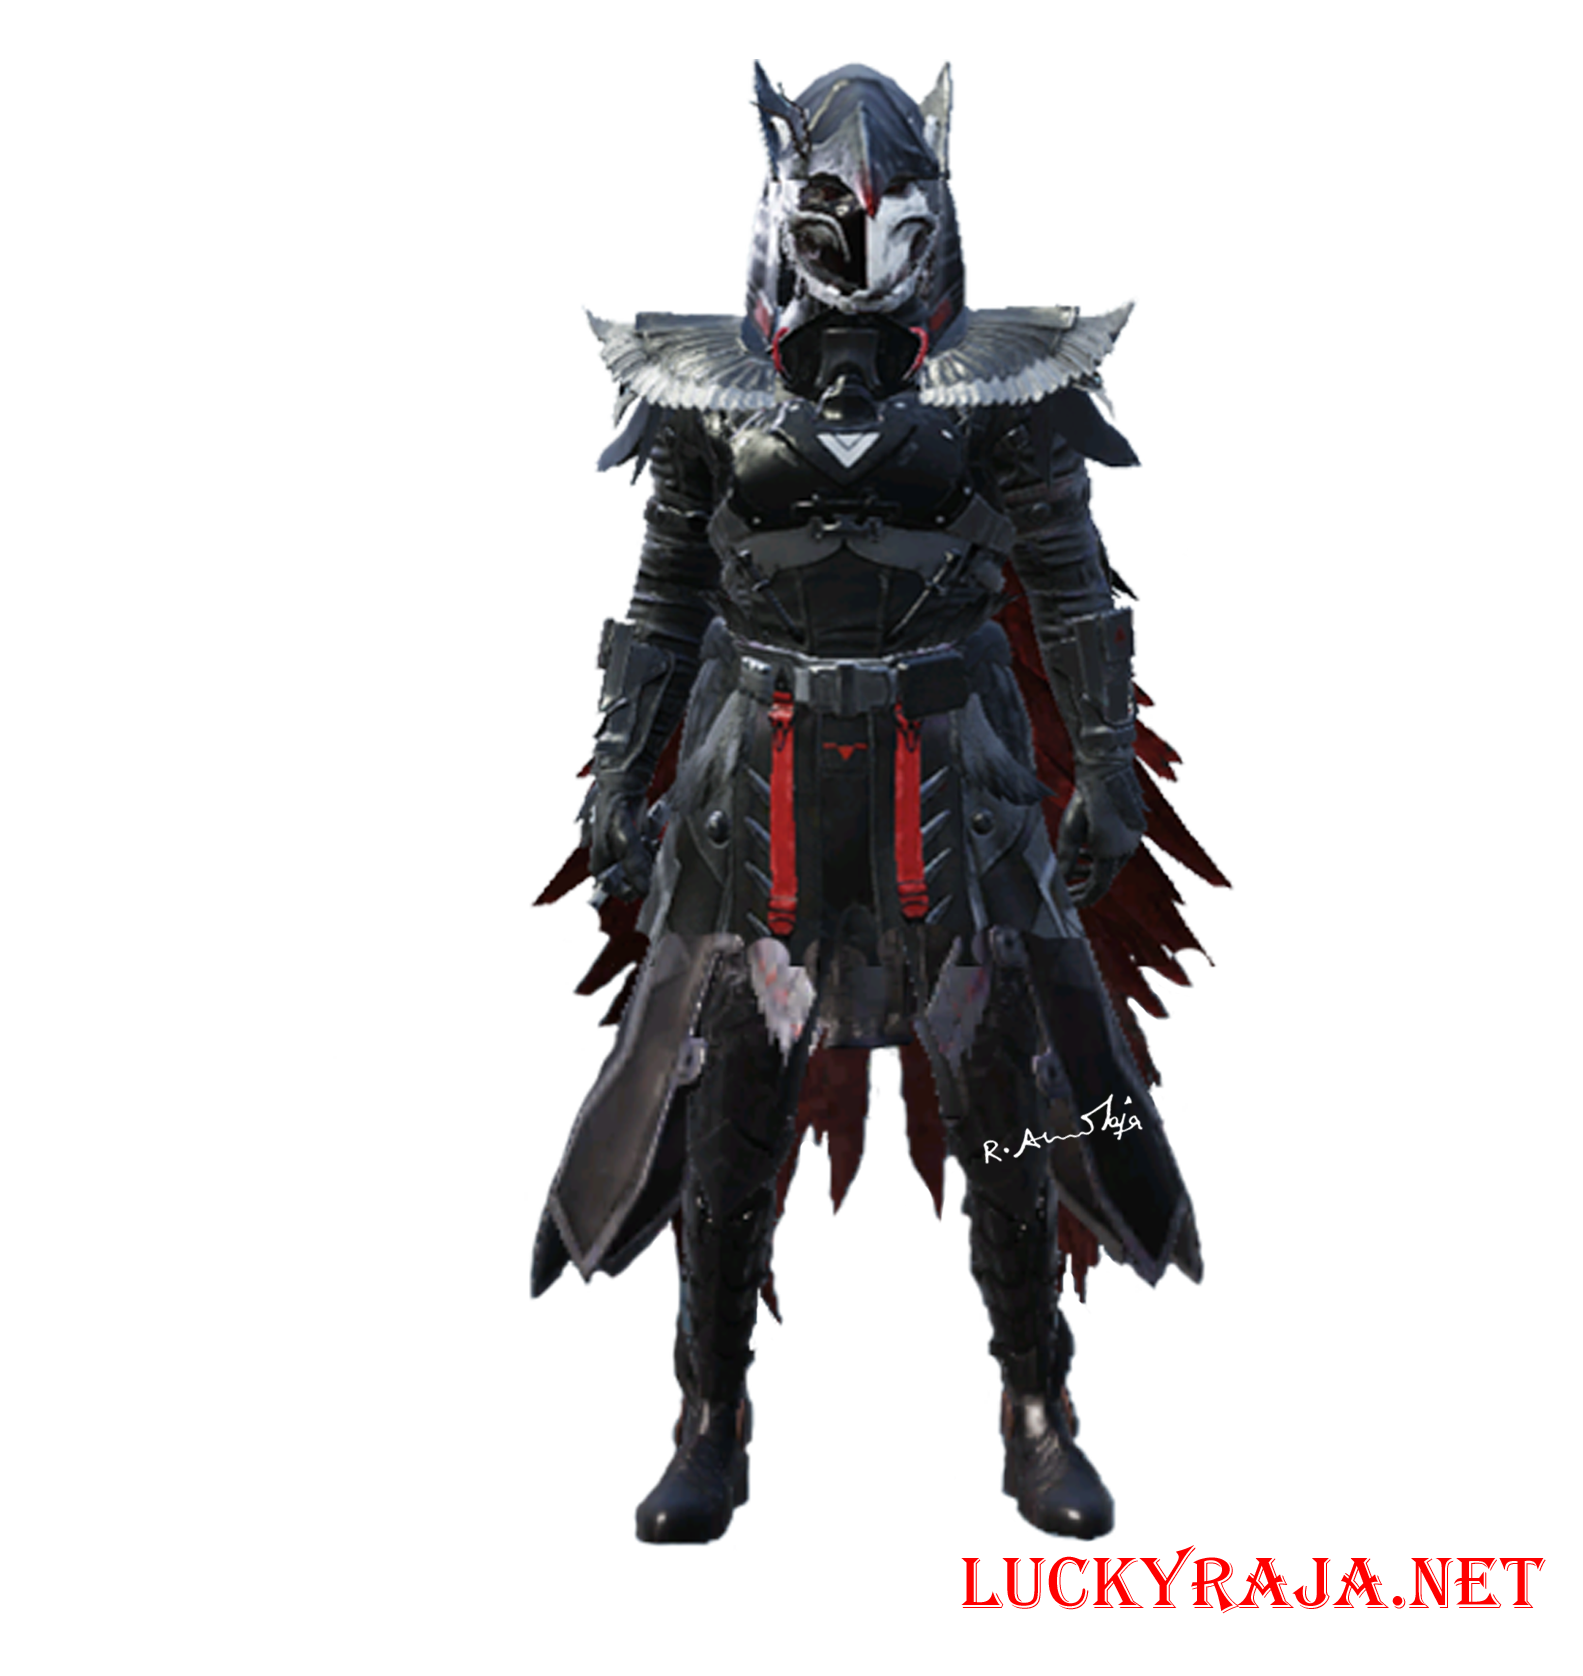 Blood Raven X- suit,Blood Raven X- suit images,Blood Raven outfits